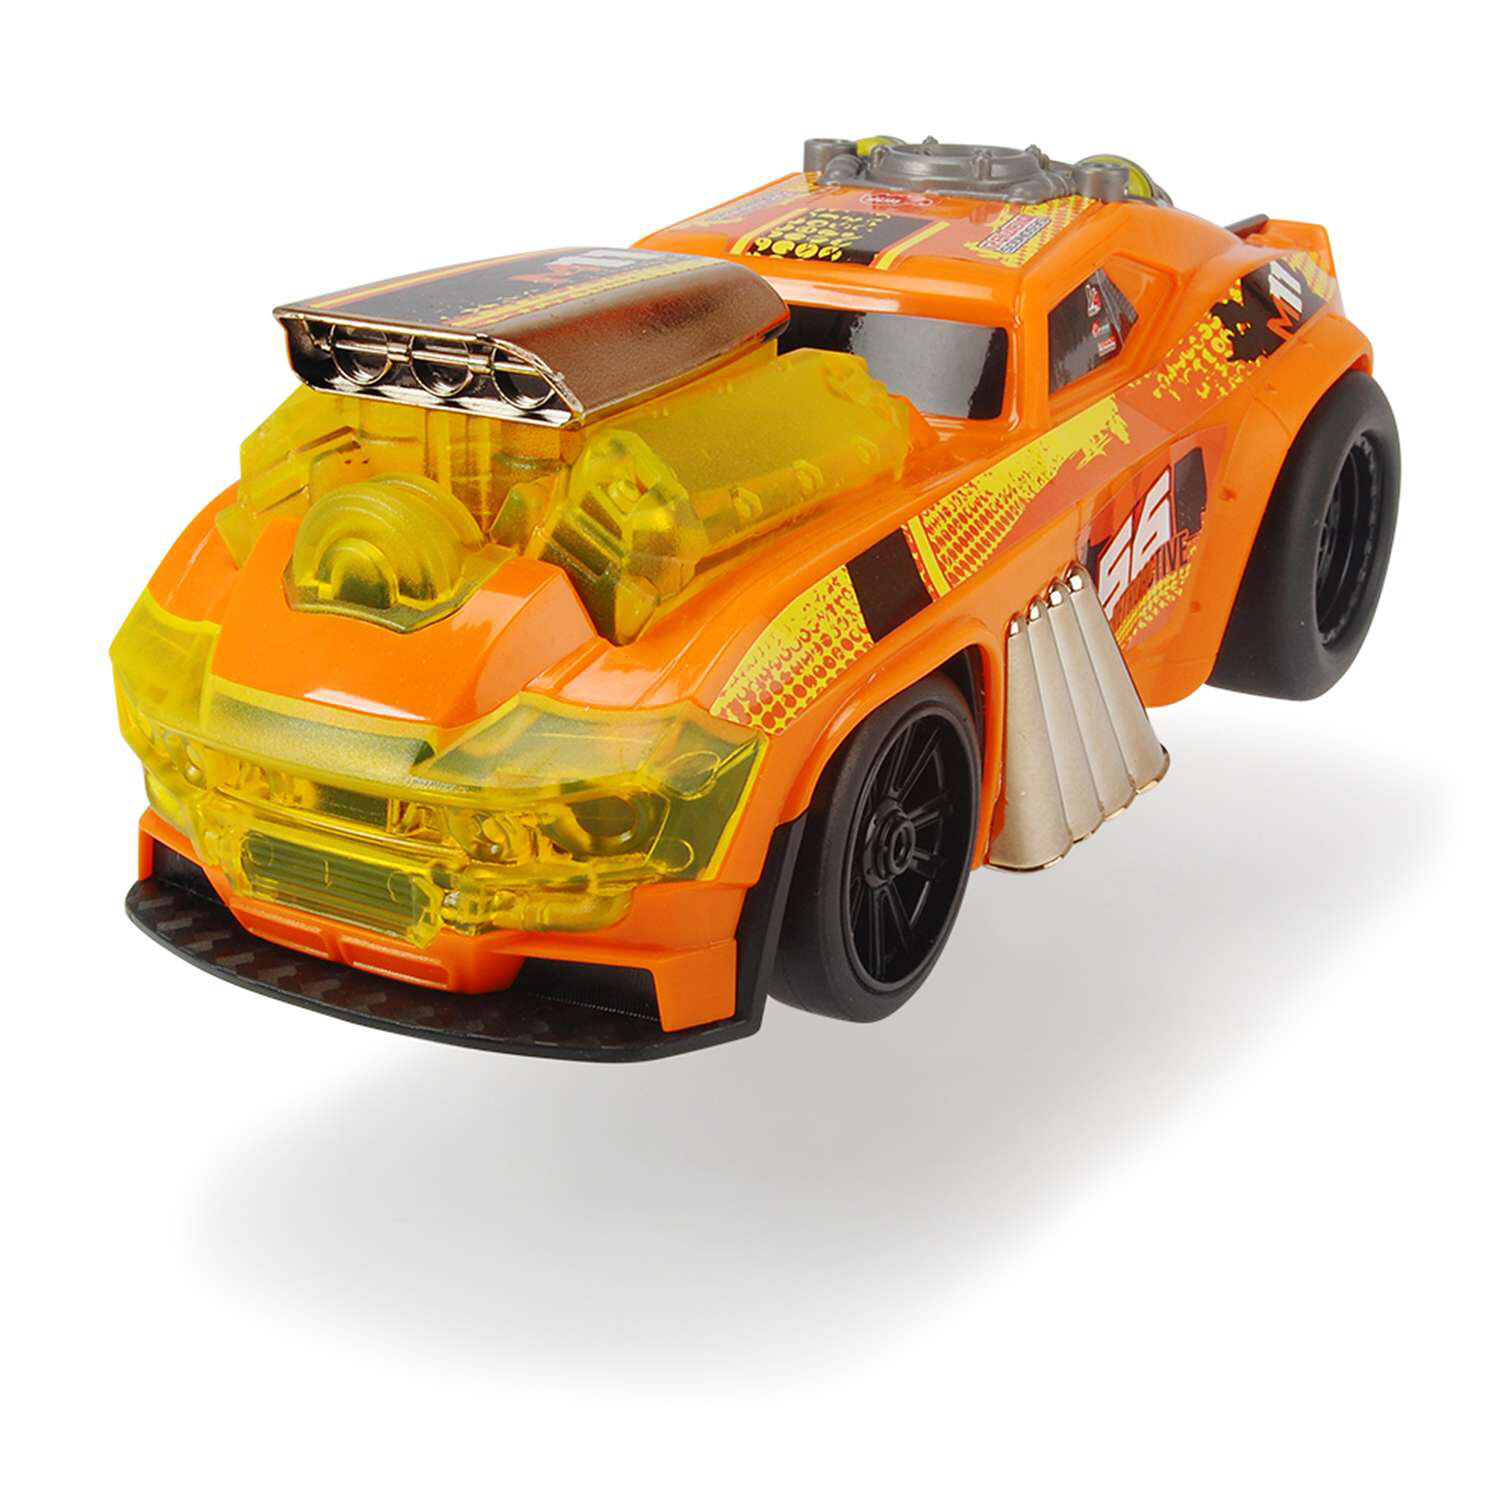 Dickie Toys машинка "Демон скорости моторизированная" 25см, оранжевая, свет, звук, 3764008 - фото №8